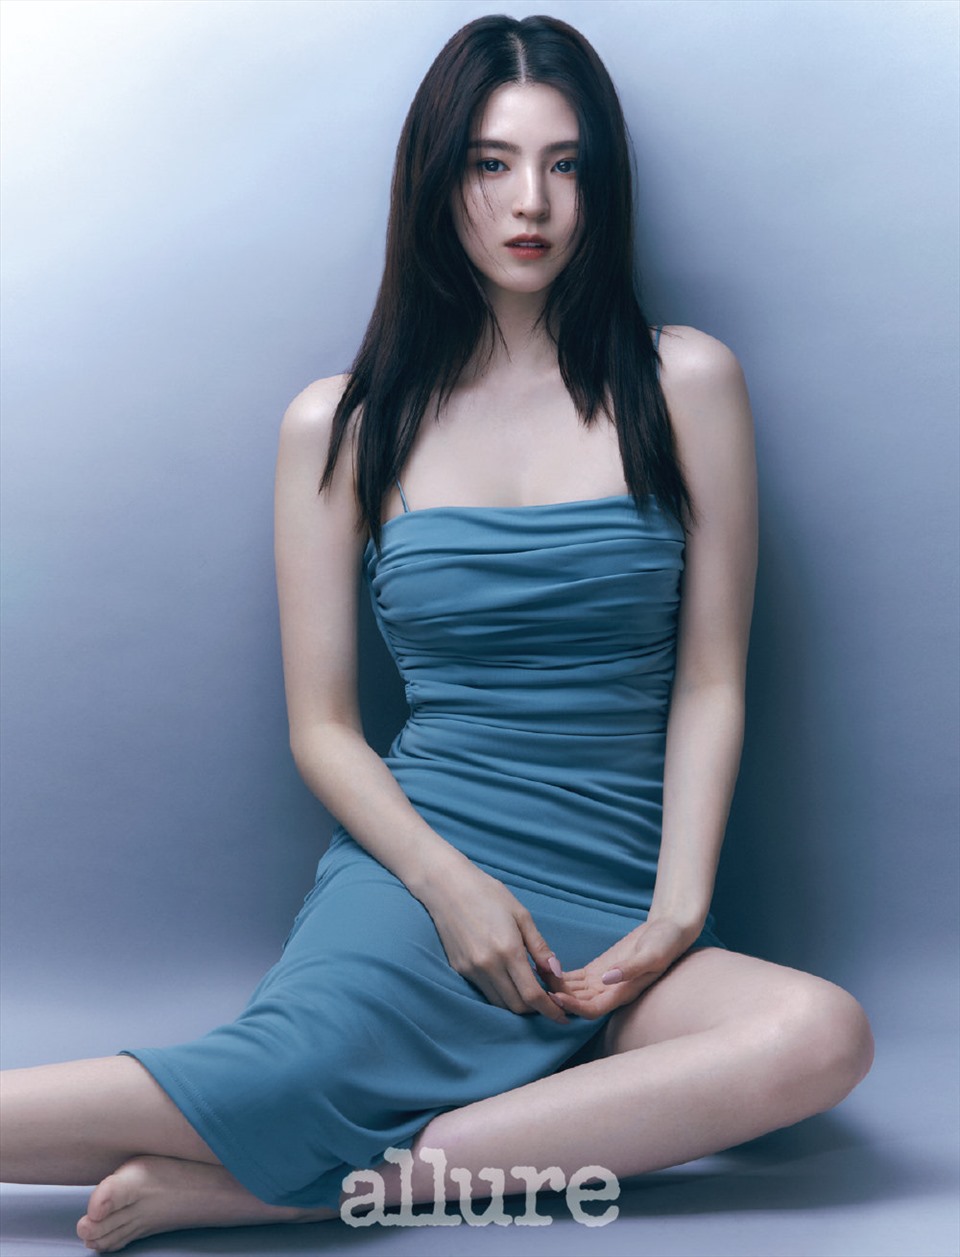 Han So Hee trông rất quyến trong bộ ảnh chụp cho tạp chí